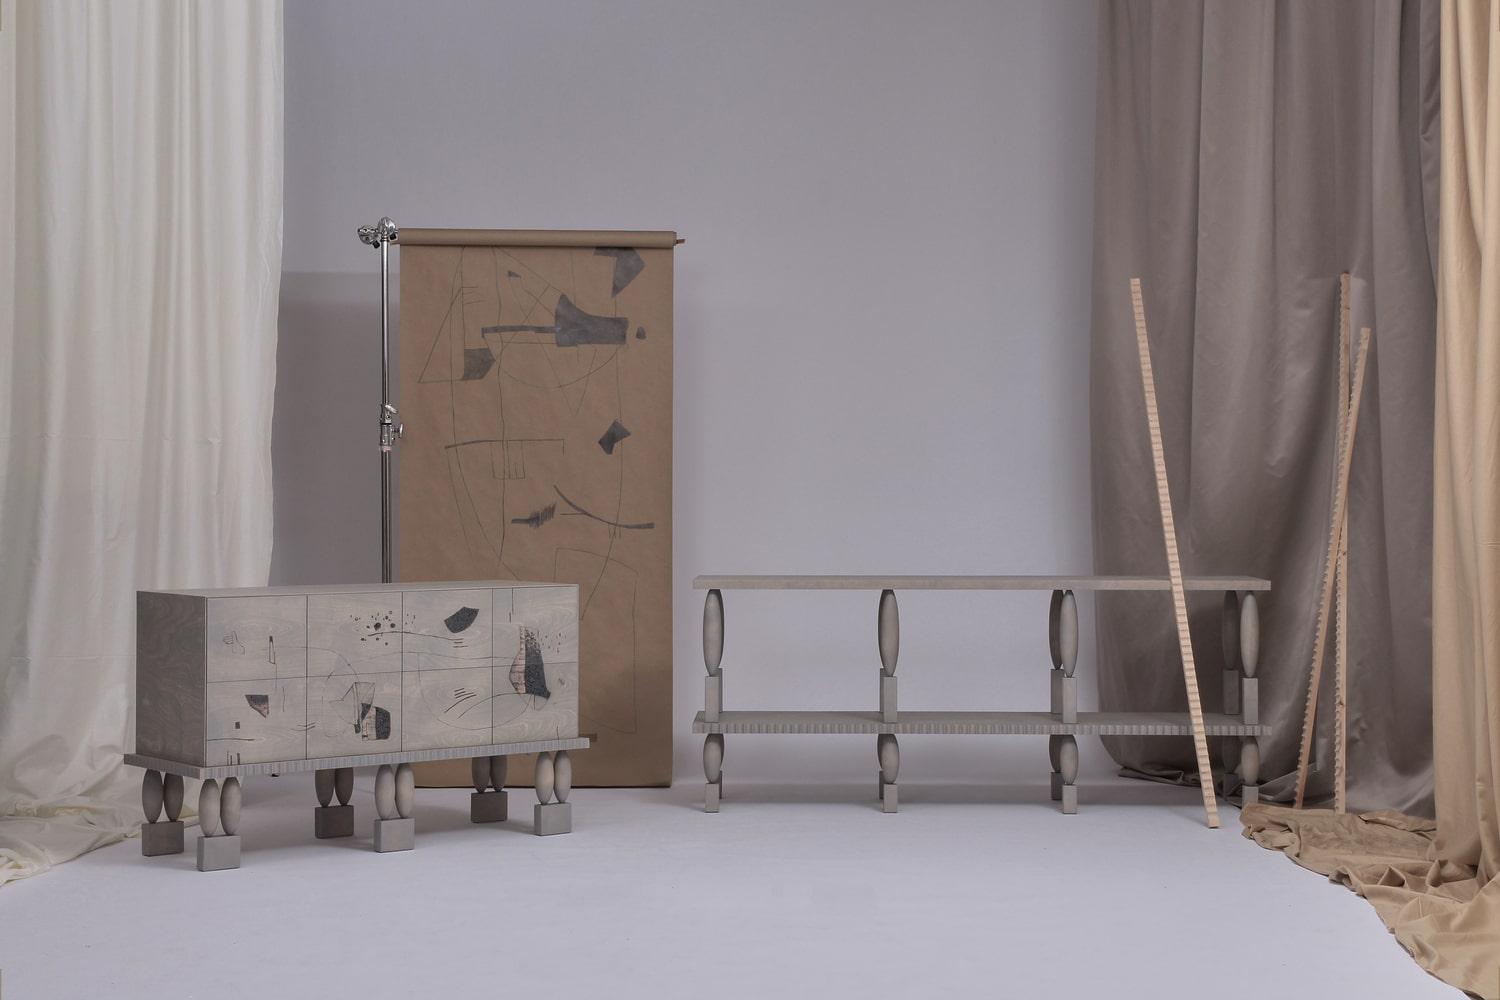 Zarte, matte Möbelkollektion mit weicher Haptik - inspiriert von der Ästhetik des Jugendstils. Der Jugendstil orientiert sich an den Werken von Jugendstilkünstlern wie František Bílek. Als Hommage an ihre Interdisziplinarität überschreiten die Möbel